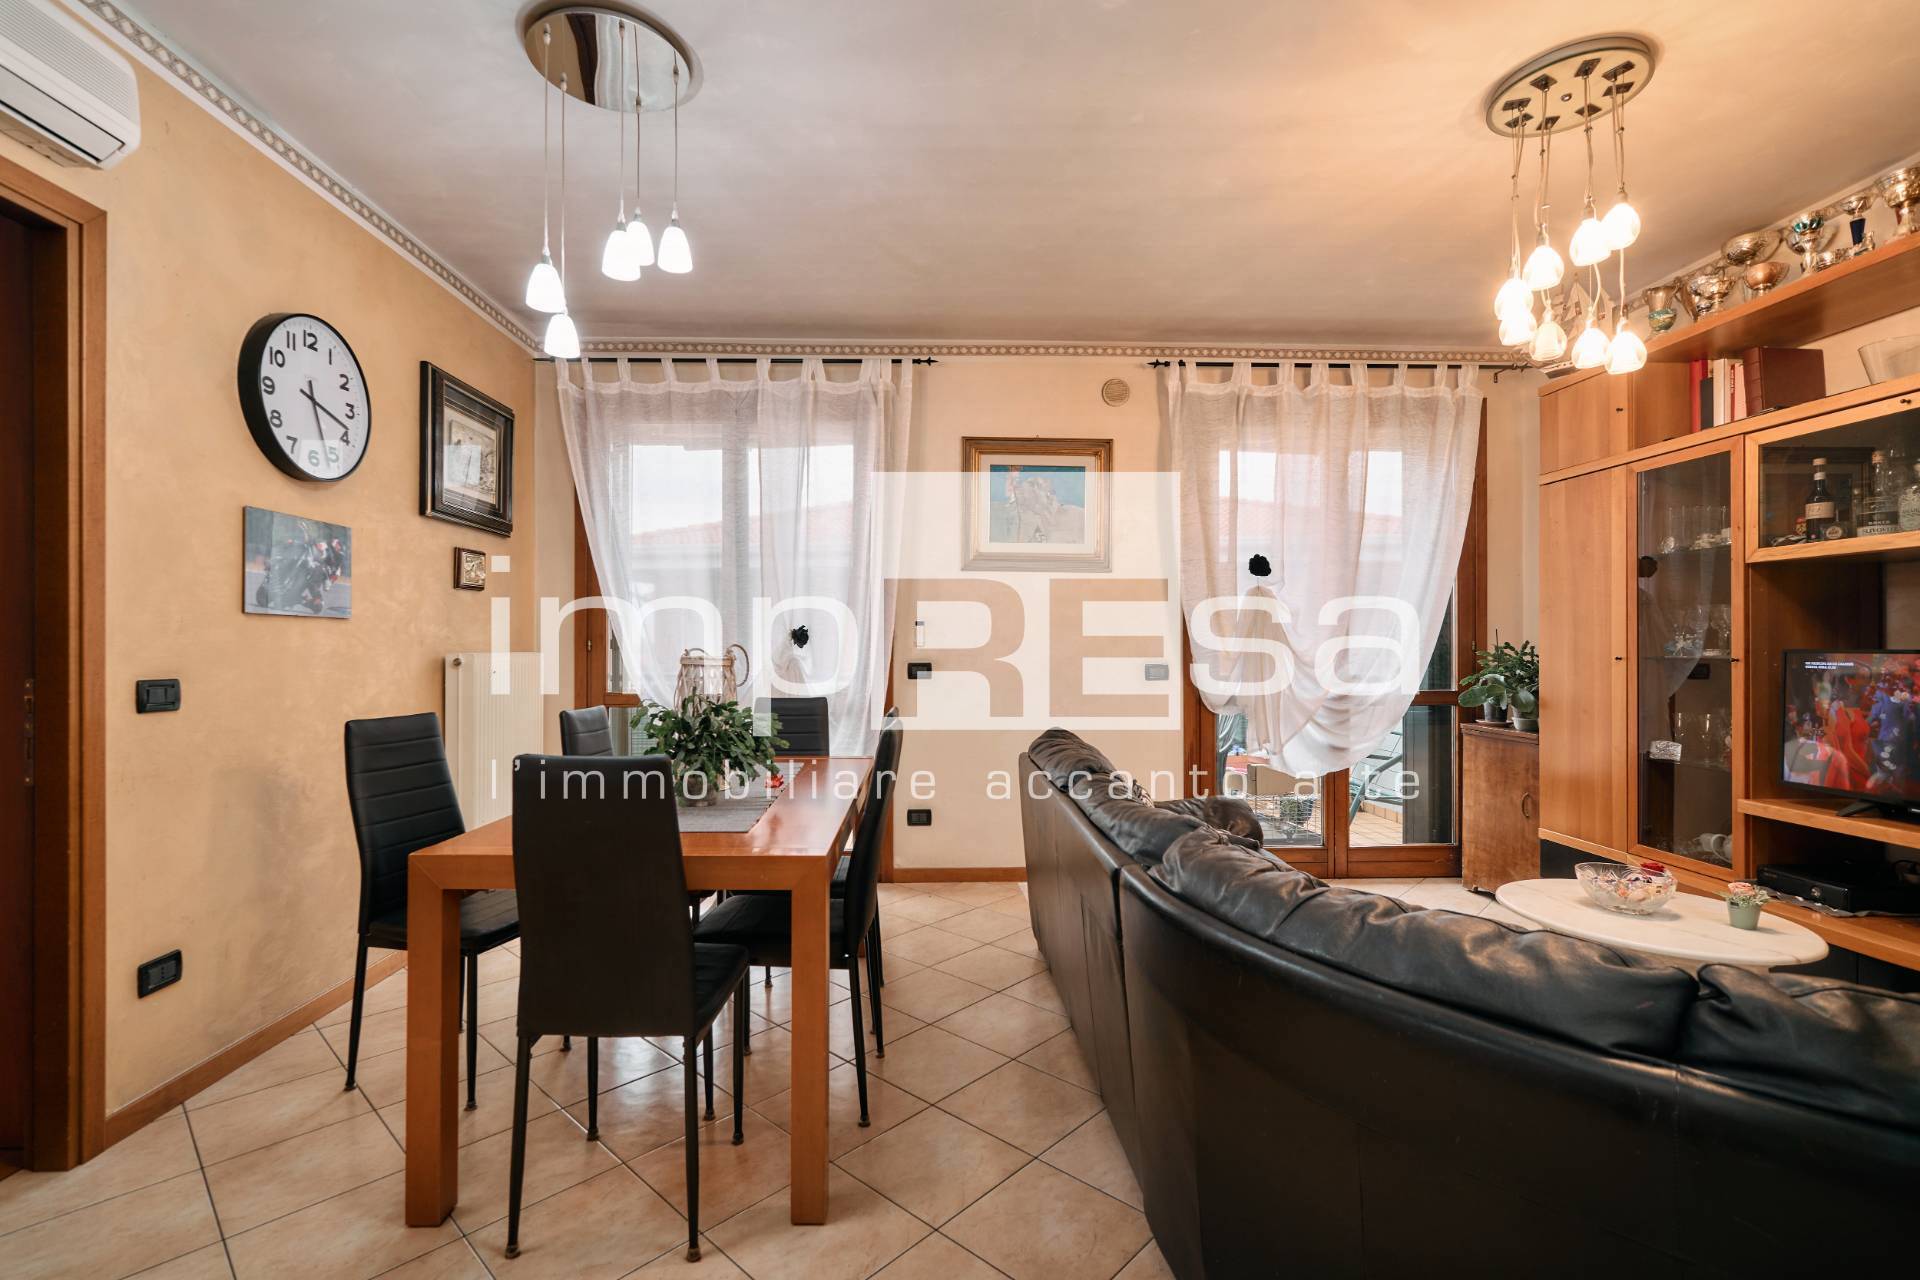 Appartamento in vendita a Treviso, 4 locali, zona Località: Fiera, prezzo € 240.000 | PortaleAgenzieImmobiliari.it